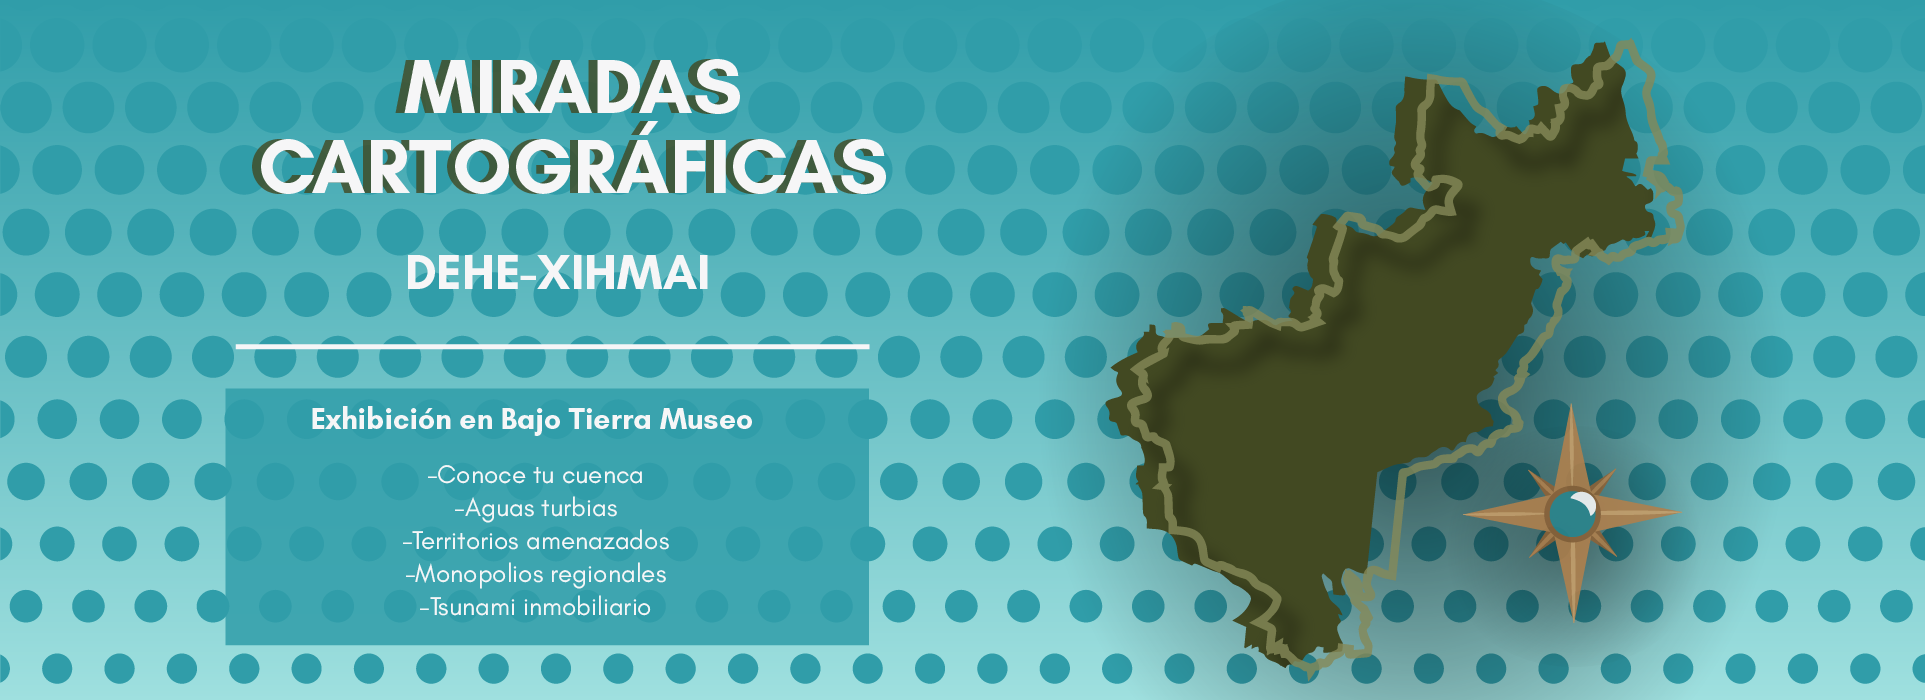 Banner de Miradas cartográficas exhibición en Bajo Tierra Museo